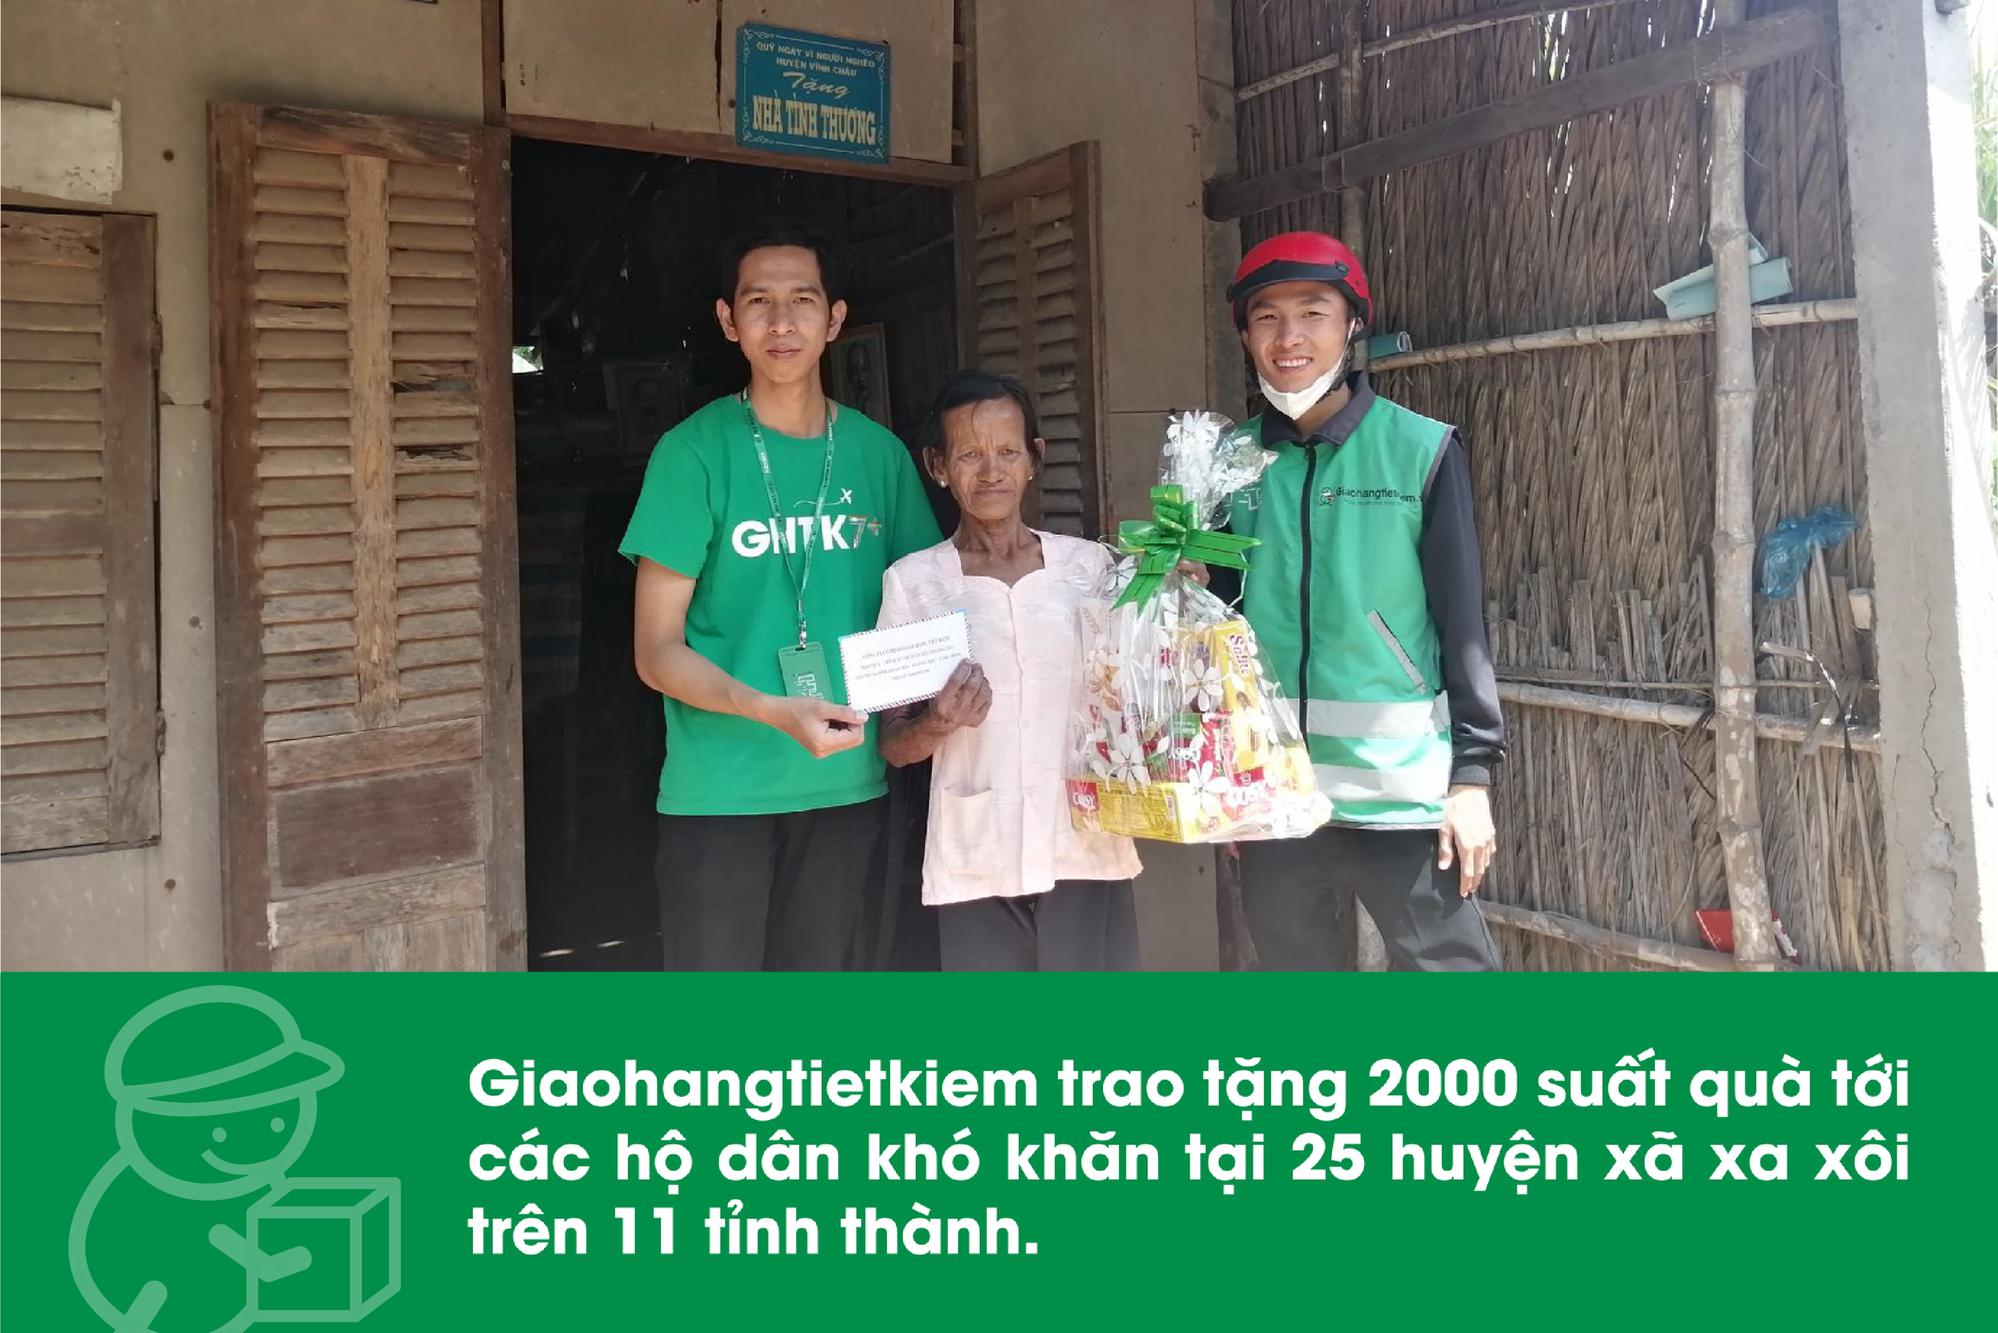 Giaohangtietkiem trao tặng 2000 suất quà tới các hộ dân khó khăn tại 25 huyện xã xa xôi trên 11 tỉnh thành